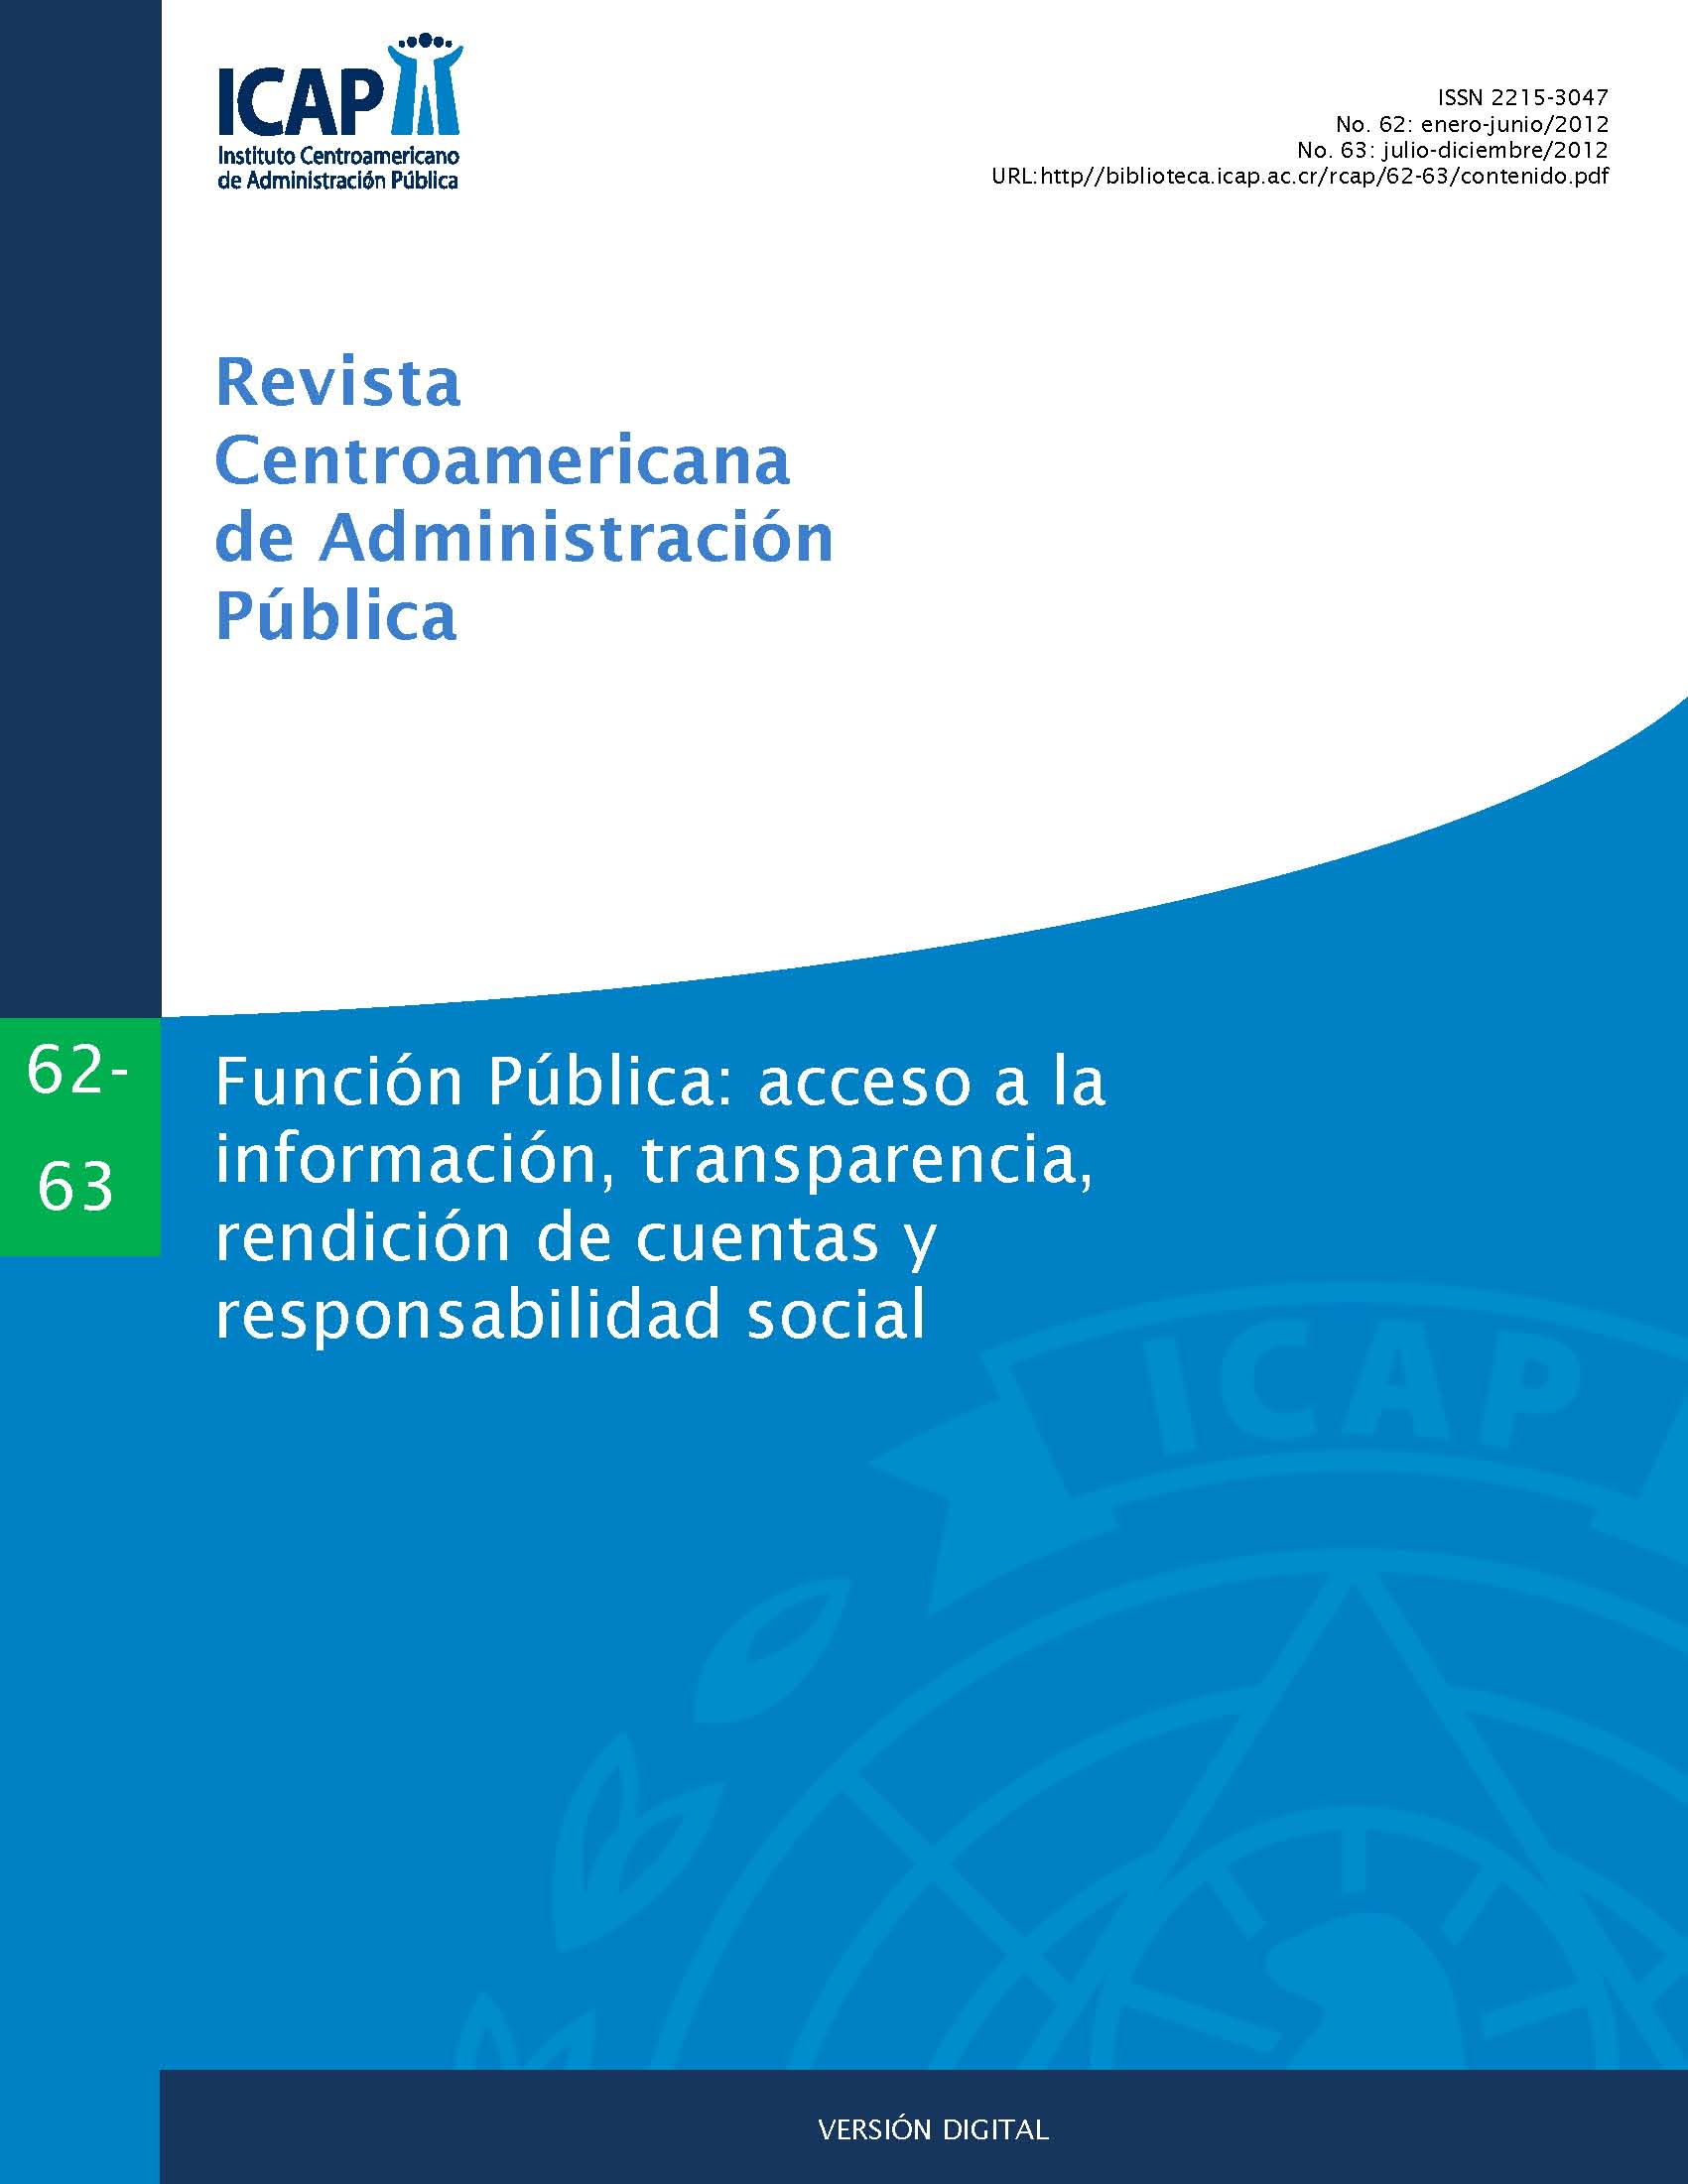 					Ver Núm. 62-63 (2012): Función Pública: acceso a la información, transparencia, rendición de cuentas y responsabilidad social
				